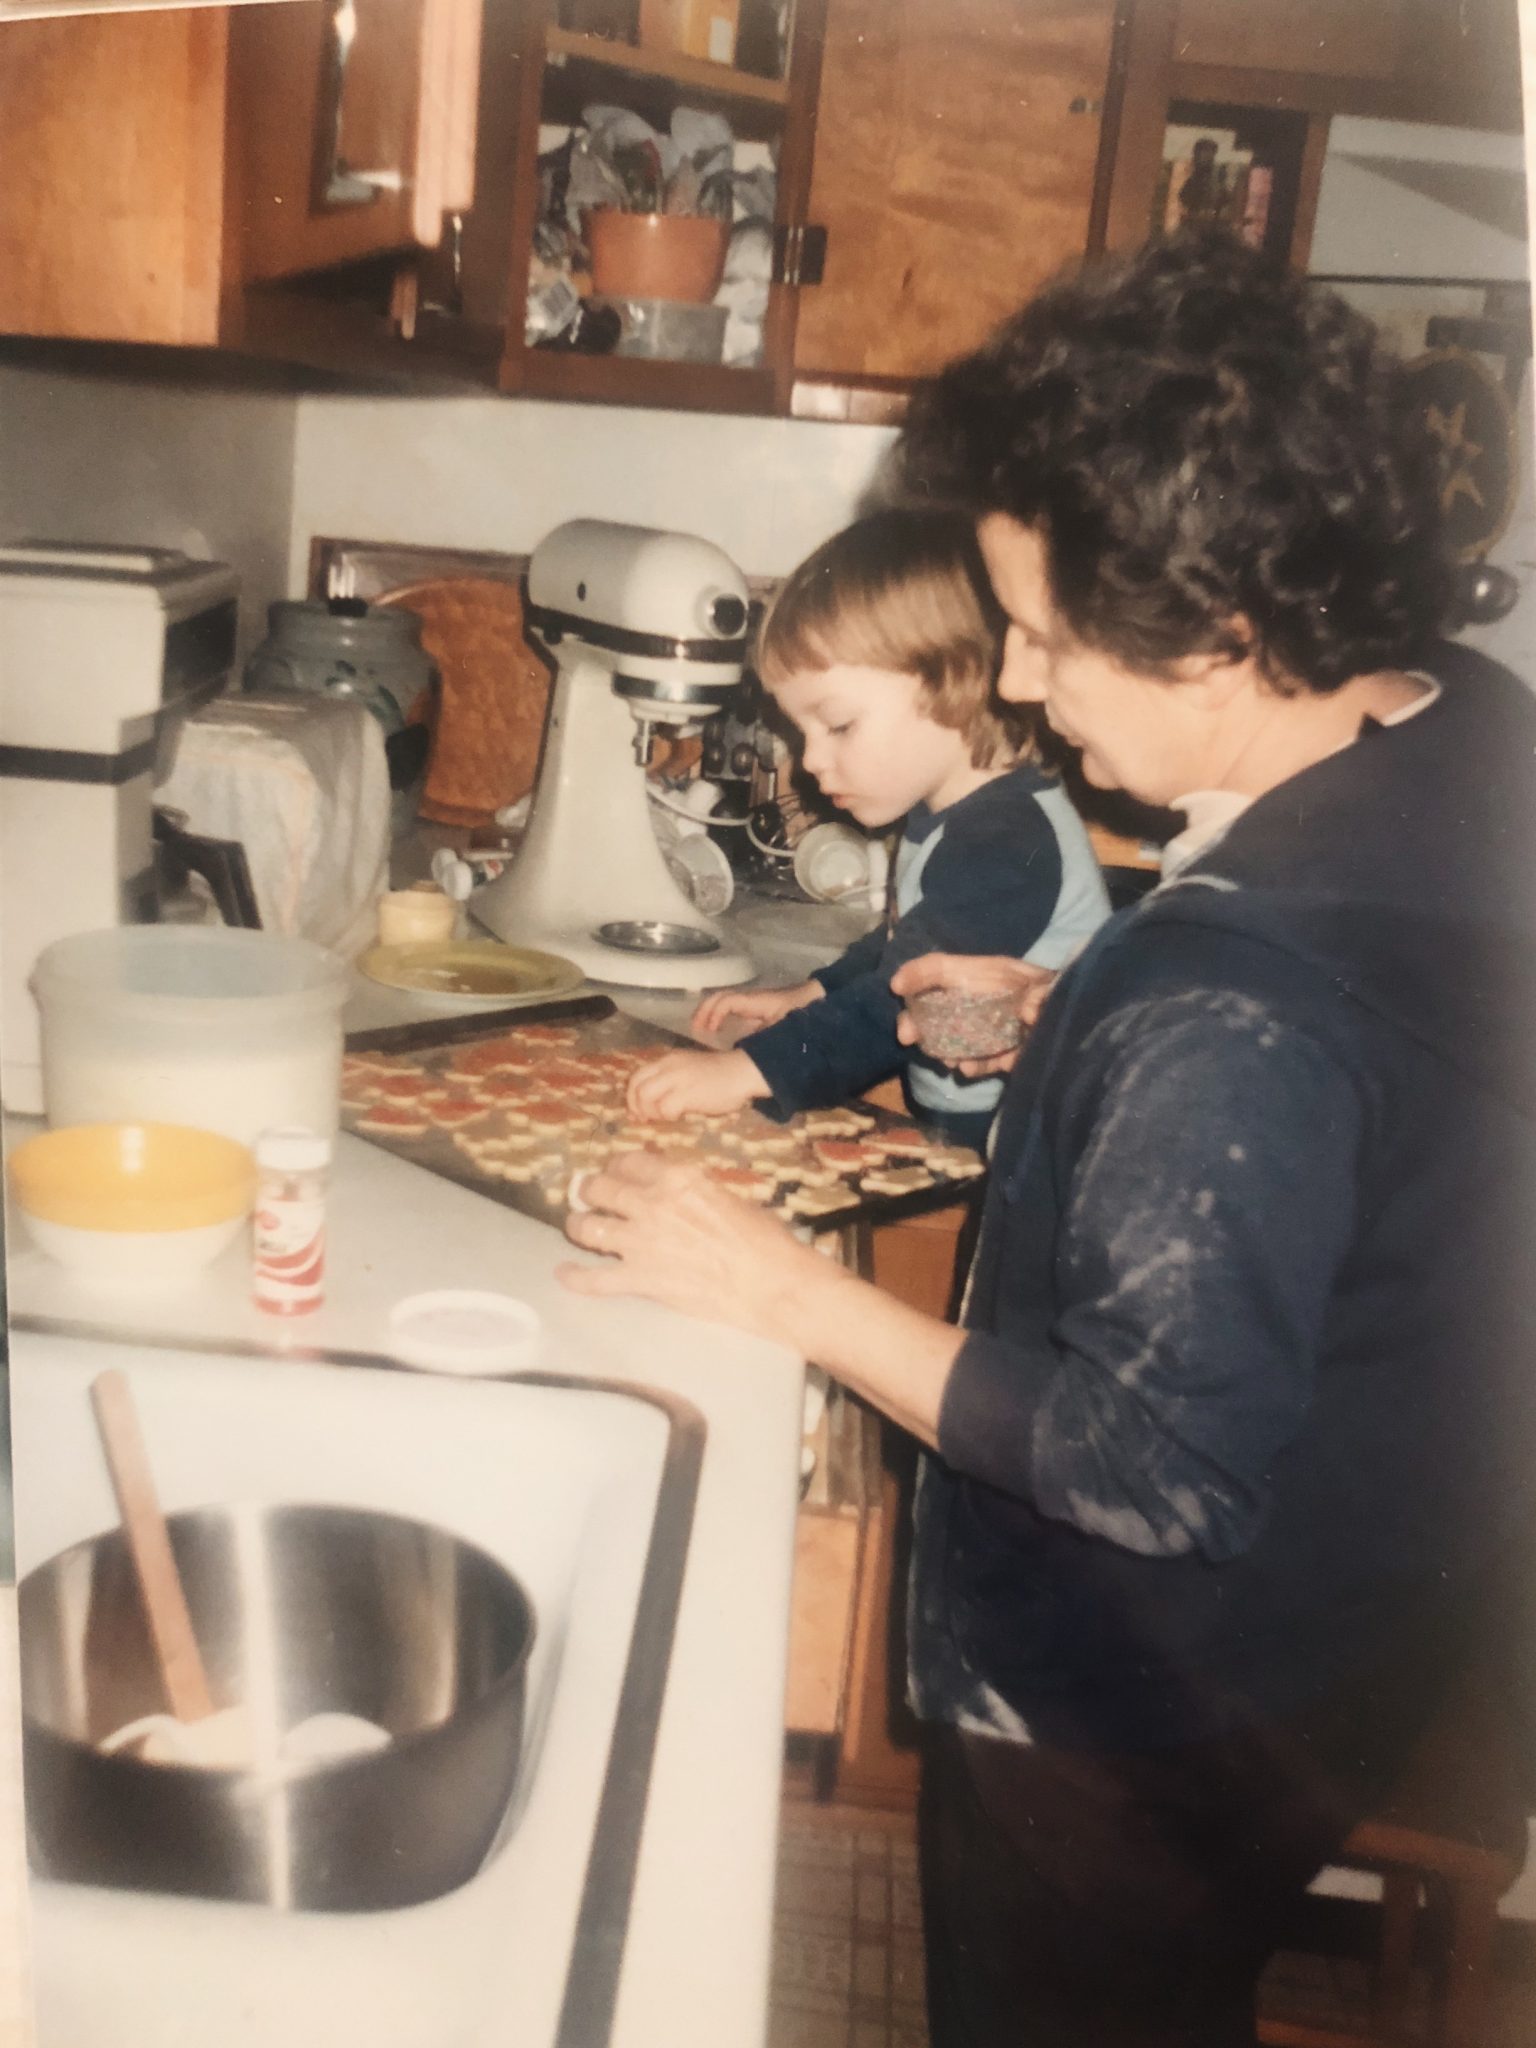 Making cookies with my sweet grandma